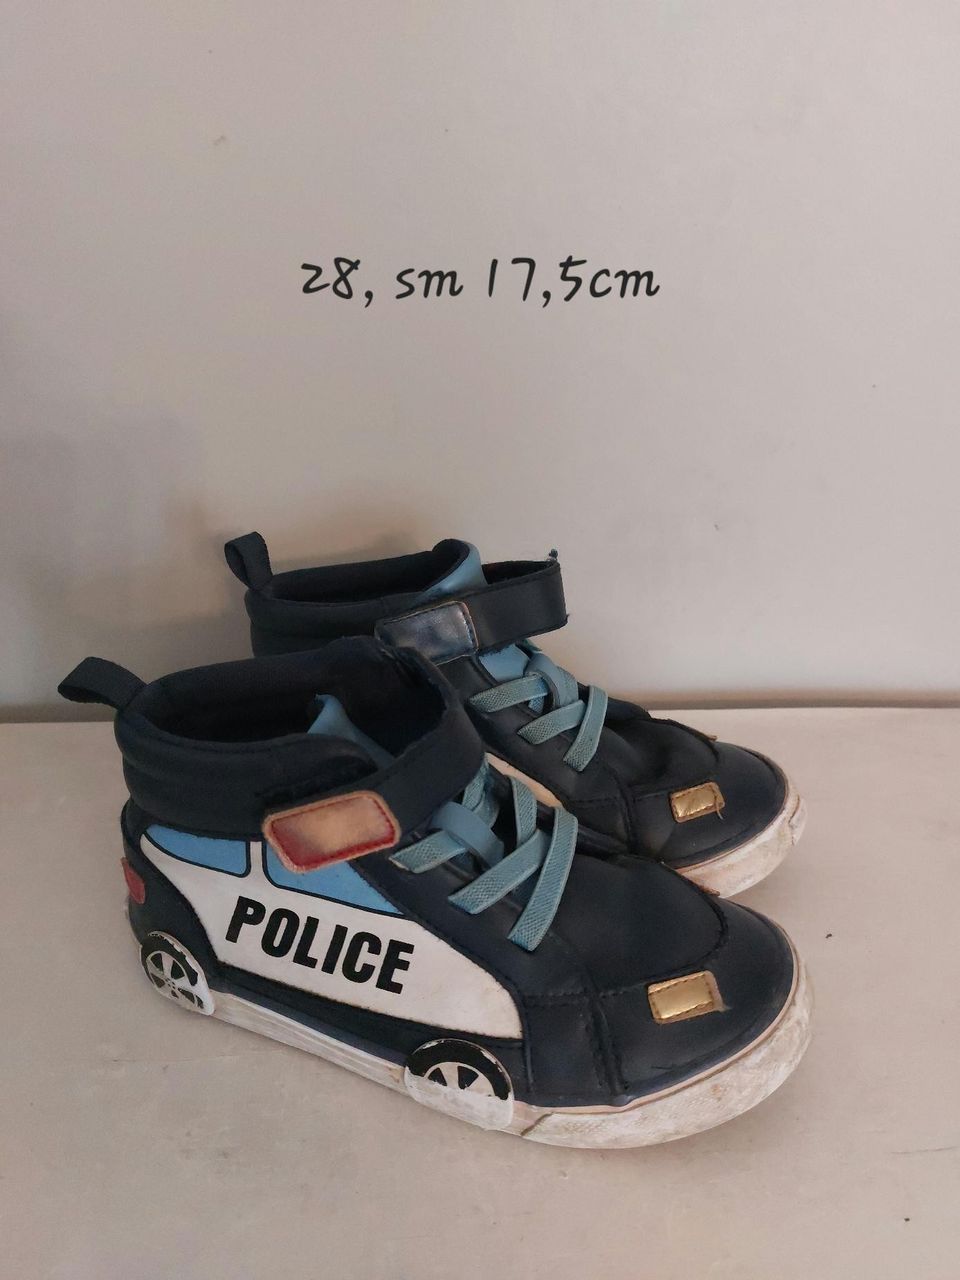 Poliisi kengät 28, sm 17,5cm